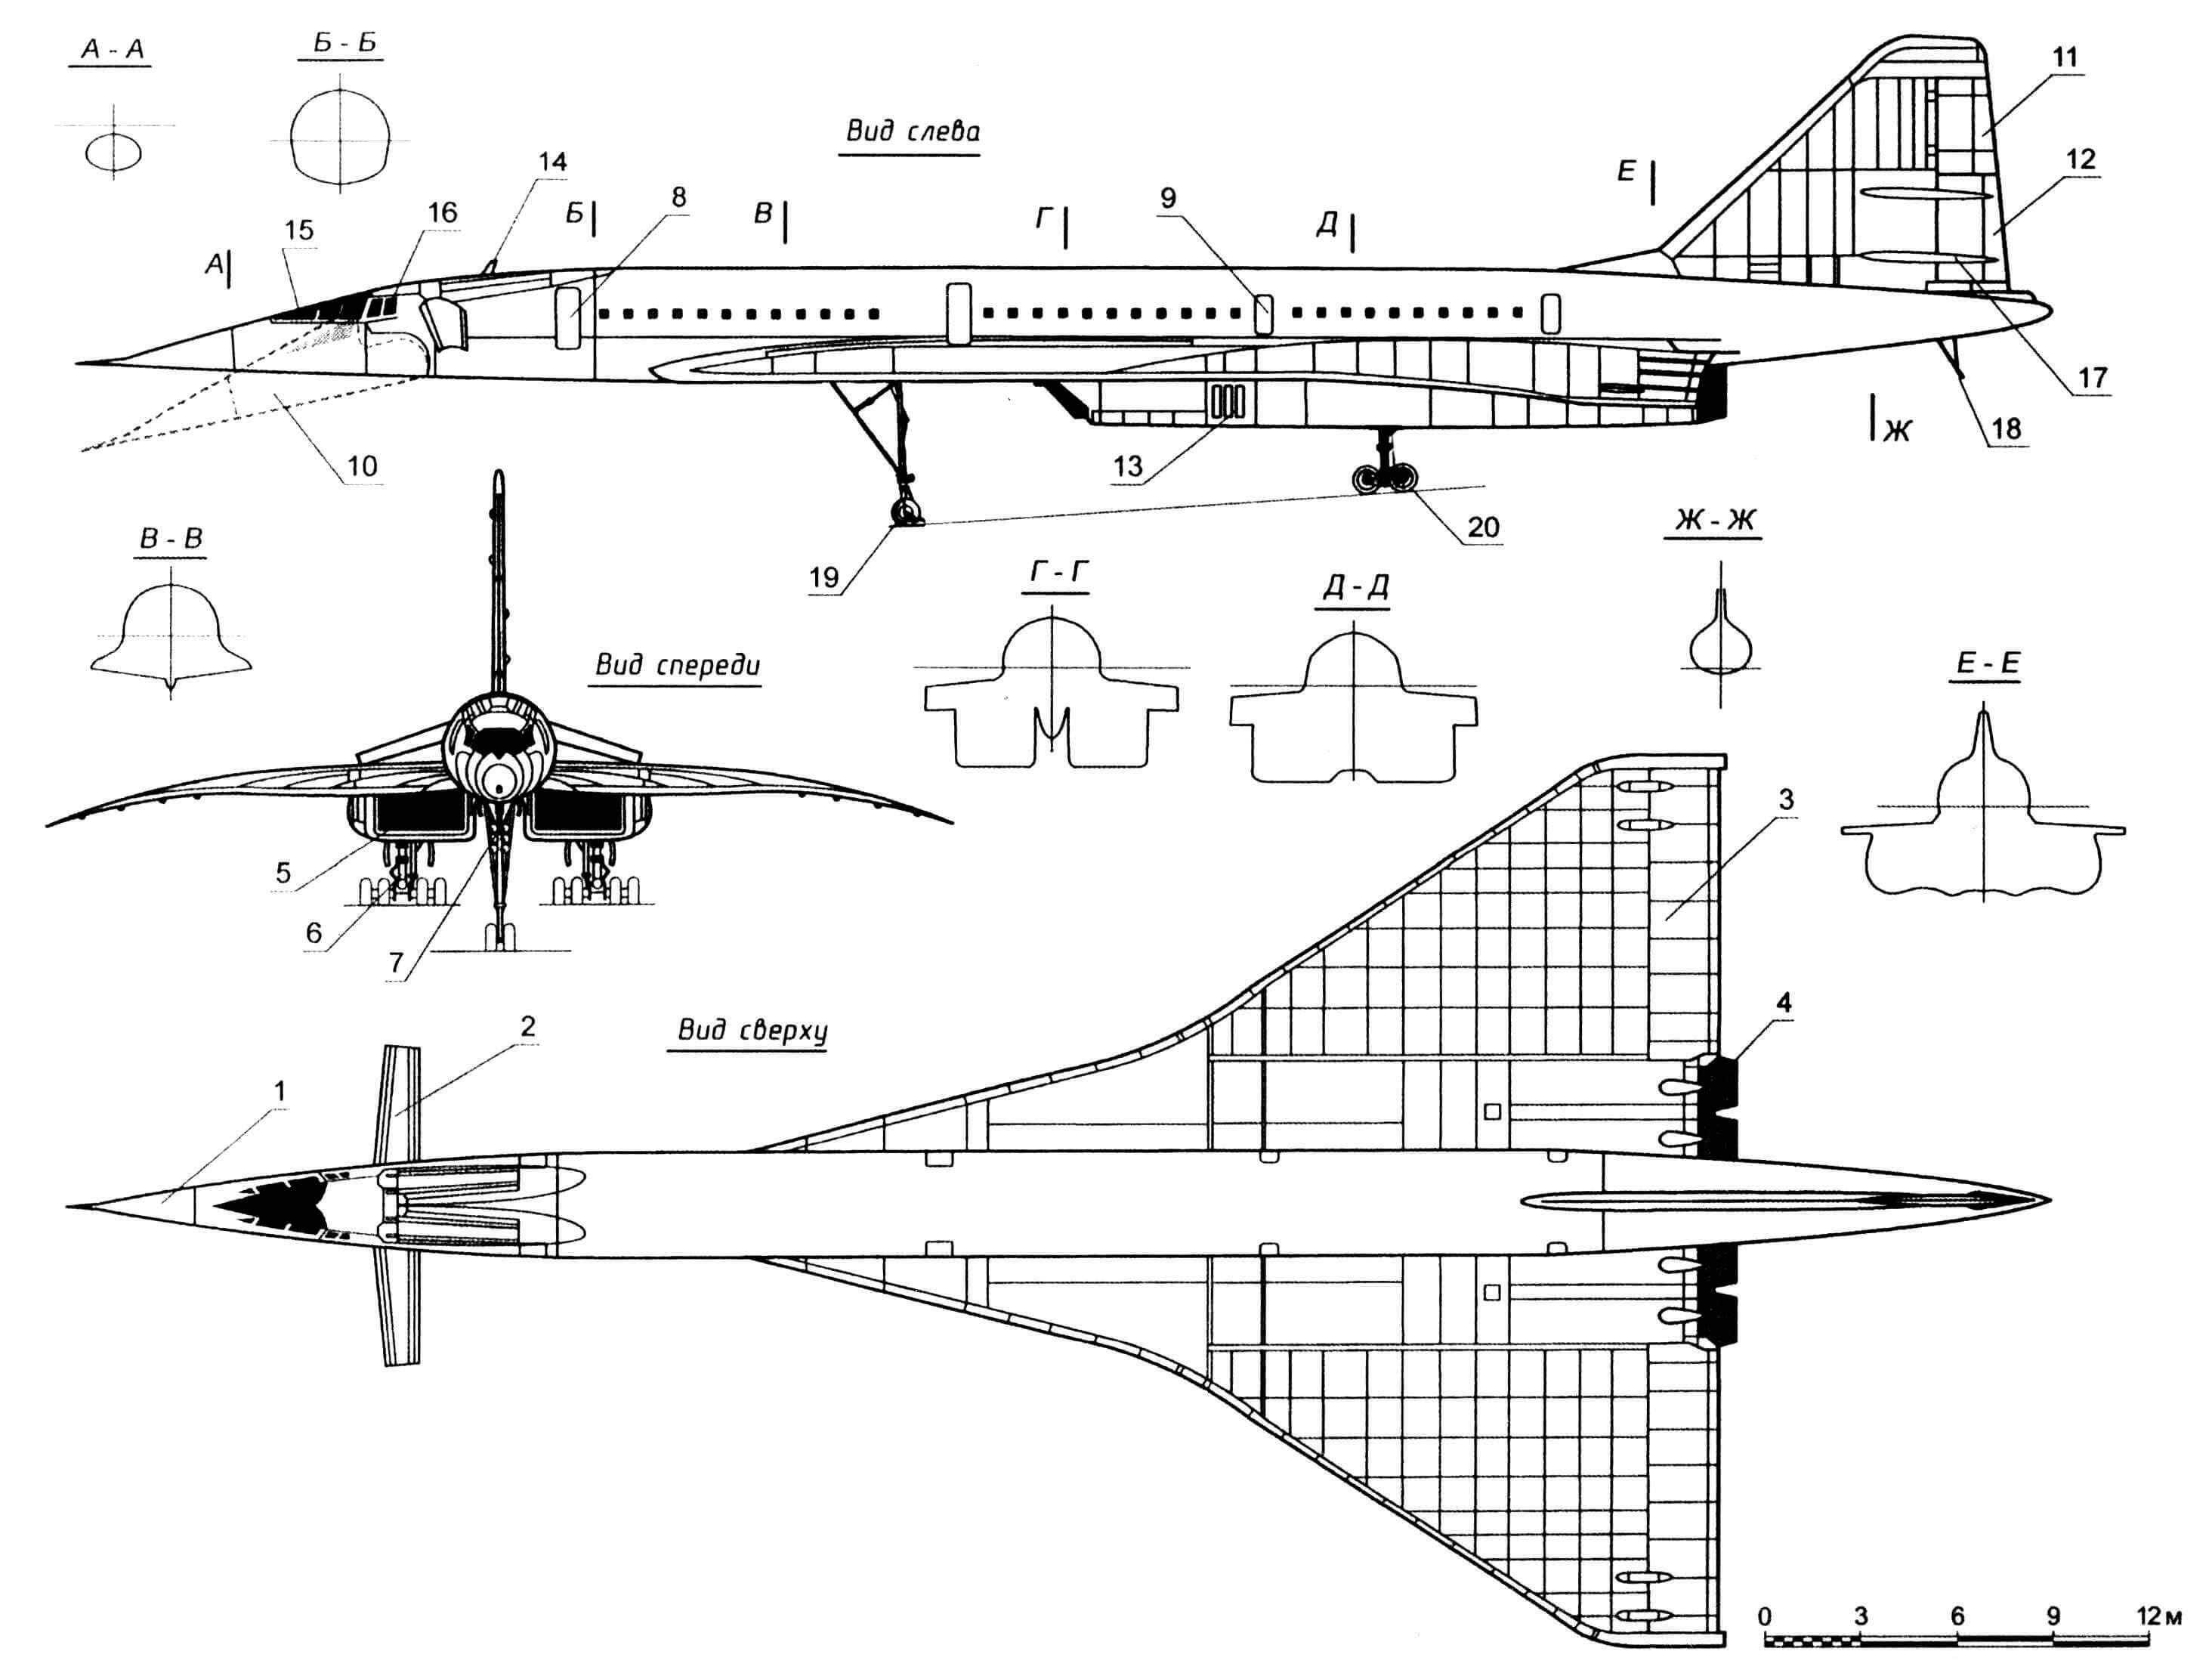 Самолет Ту-144: 1 - радиопрозрачный обтекатель антенны РЛС «Гроза-144»; 2 - переднее многощелевое крыло; 3 — элевон; 4 - регулируемое реактивное сопло двигателя НК-144А; 5 - воздухозаборное устройство двигателя; 6 - основная опора шасси; 7 - передняя опора шасси; 8 - входная дверь; 9 - аварийная дверь; 10 - носовой обтекатель в посадочном положении; 11 - форкиль; 12 - руль направления; 13 - створки подпитки двигателя воздухом; 14 - антенна командной радиостанции; 15 - остекление носового обтекателя; 16 - остекление кабины пилотов; 17 - обтекатель тяги руля направления; 18 - хвостовая предохранительная пята; 19 - колесо размером 950x300 мм (2 шт.); 20 - колесо размером 950x400 мм (по 8 шт. на двух тележках)